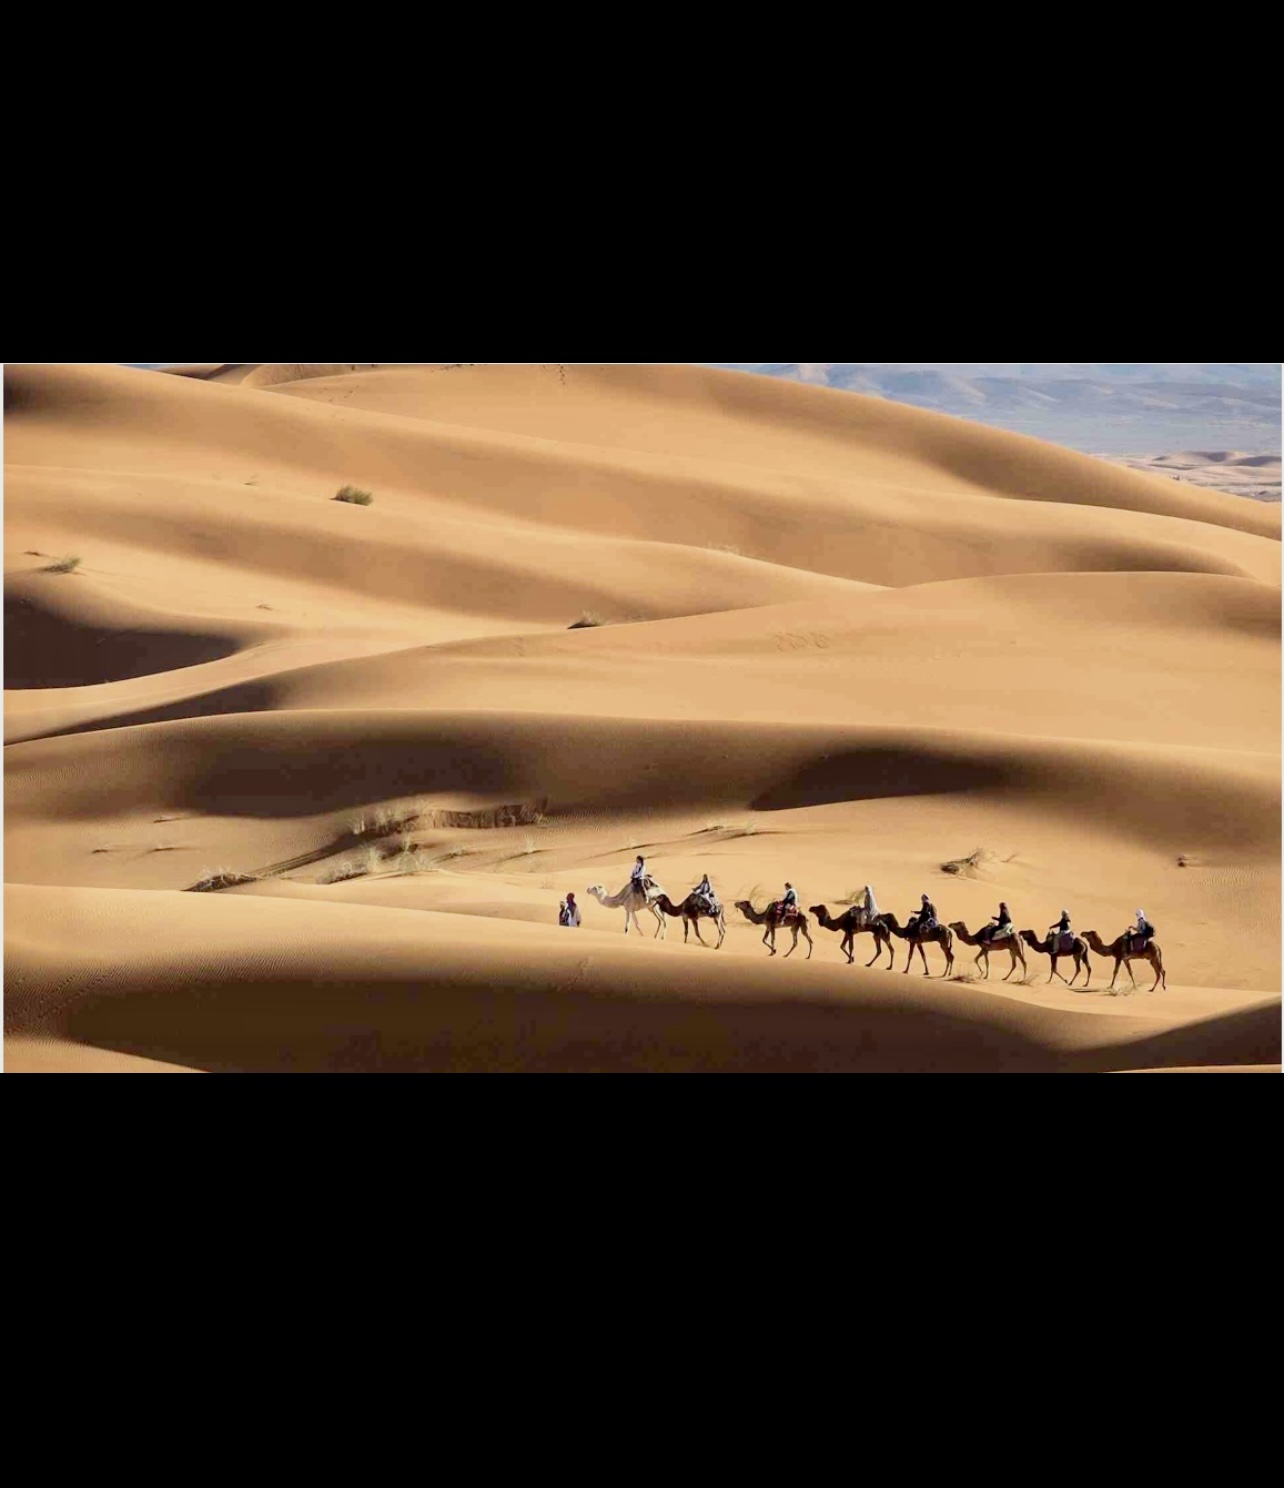 Un groupe de personnes chevauchant des chameaux dans le désert.